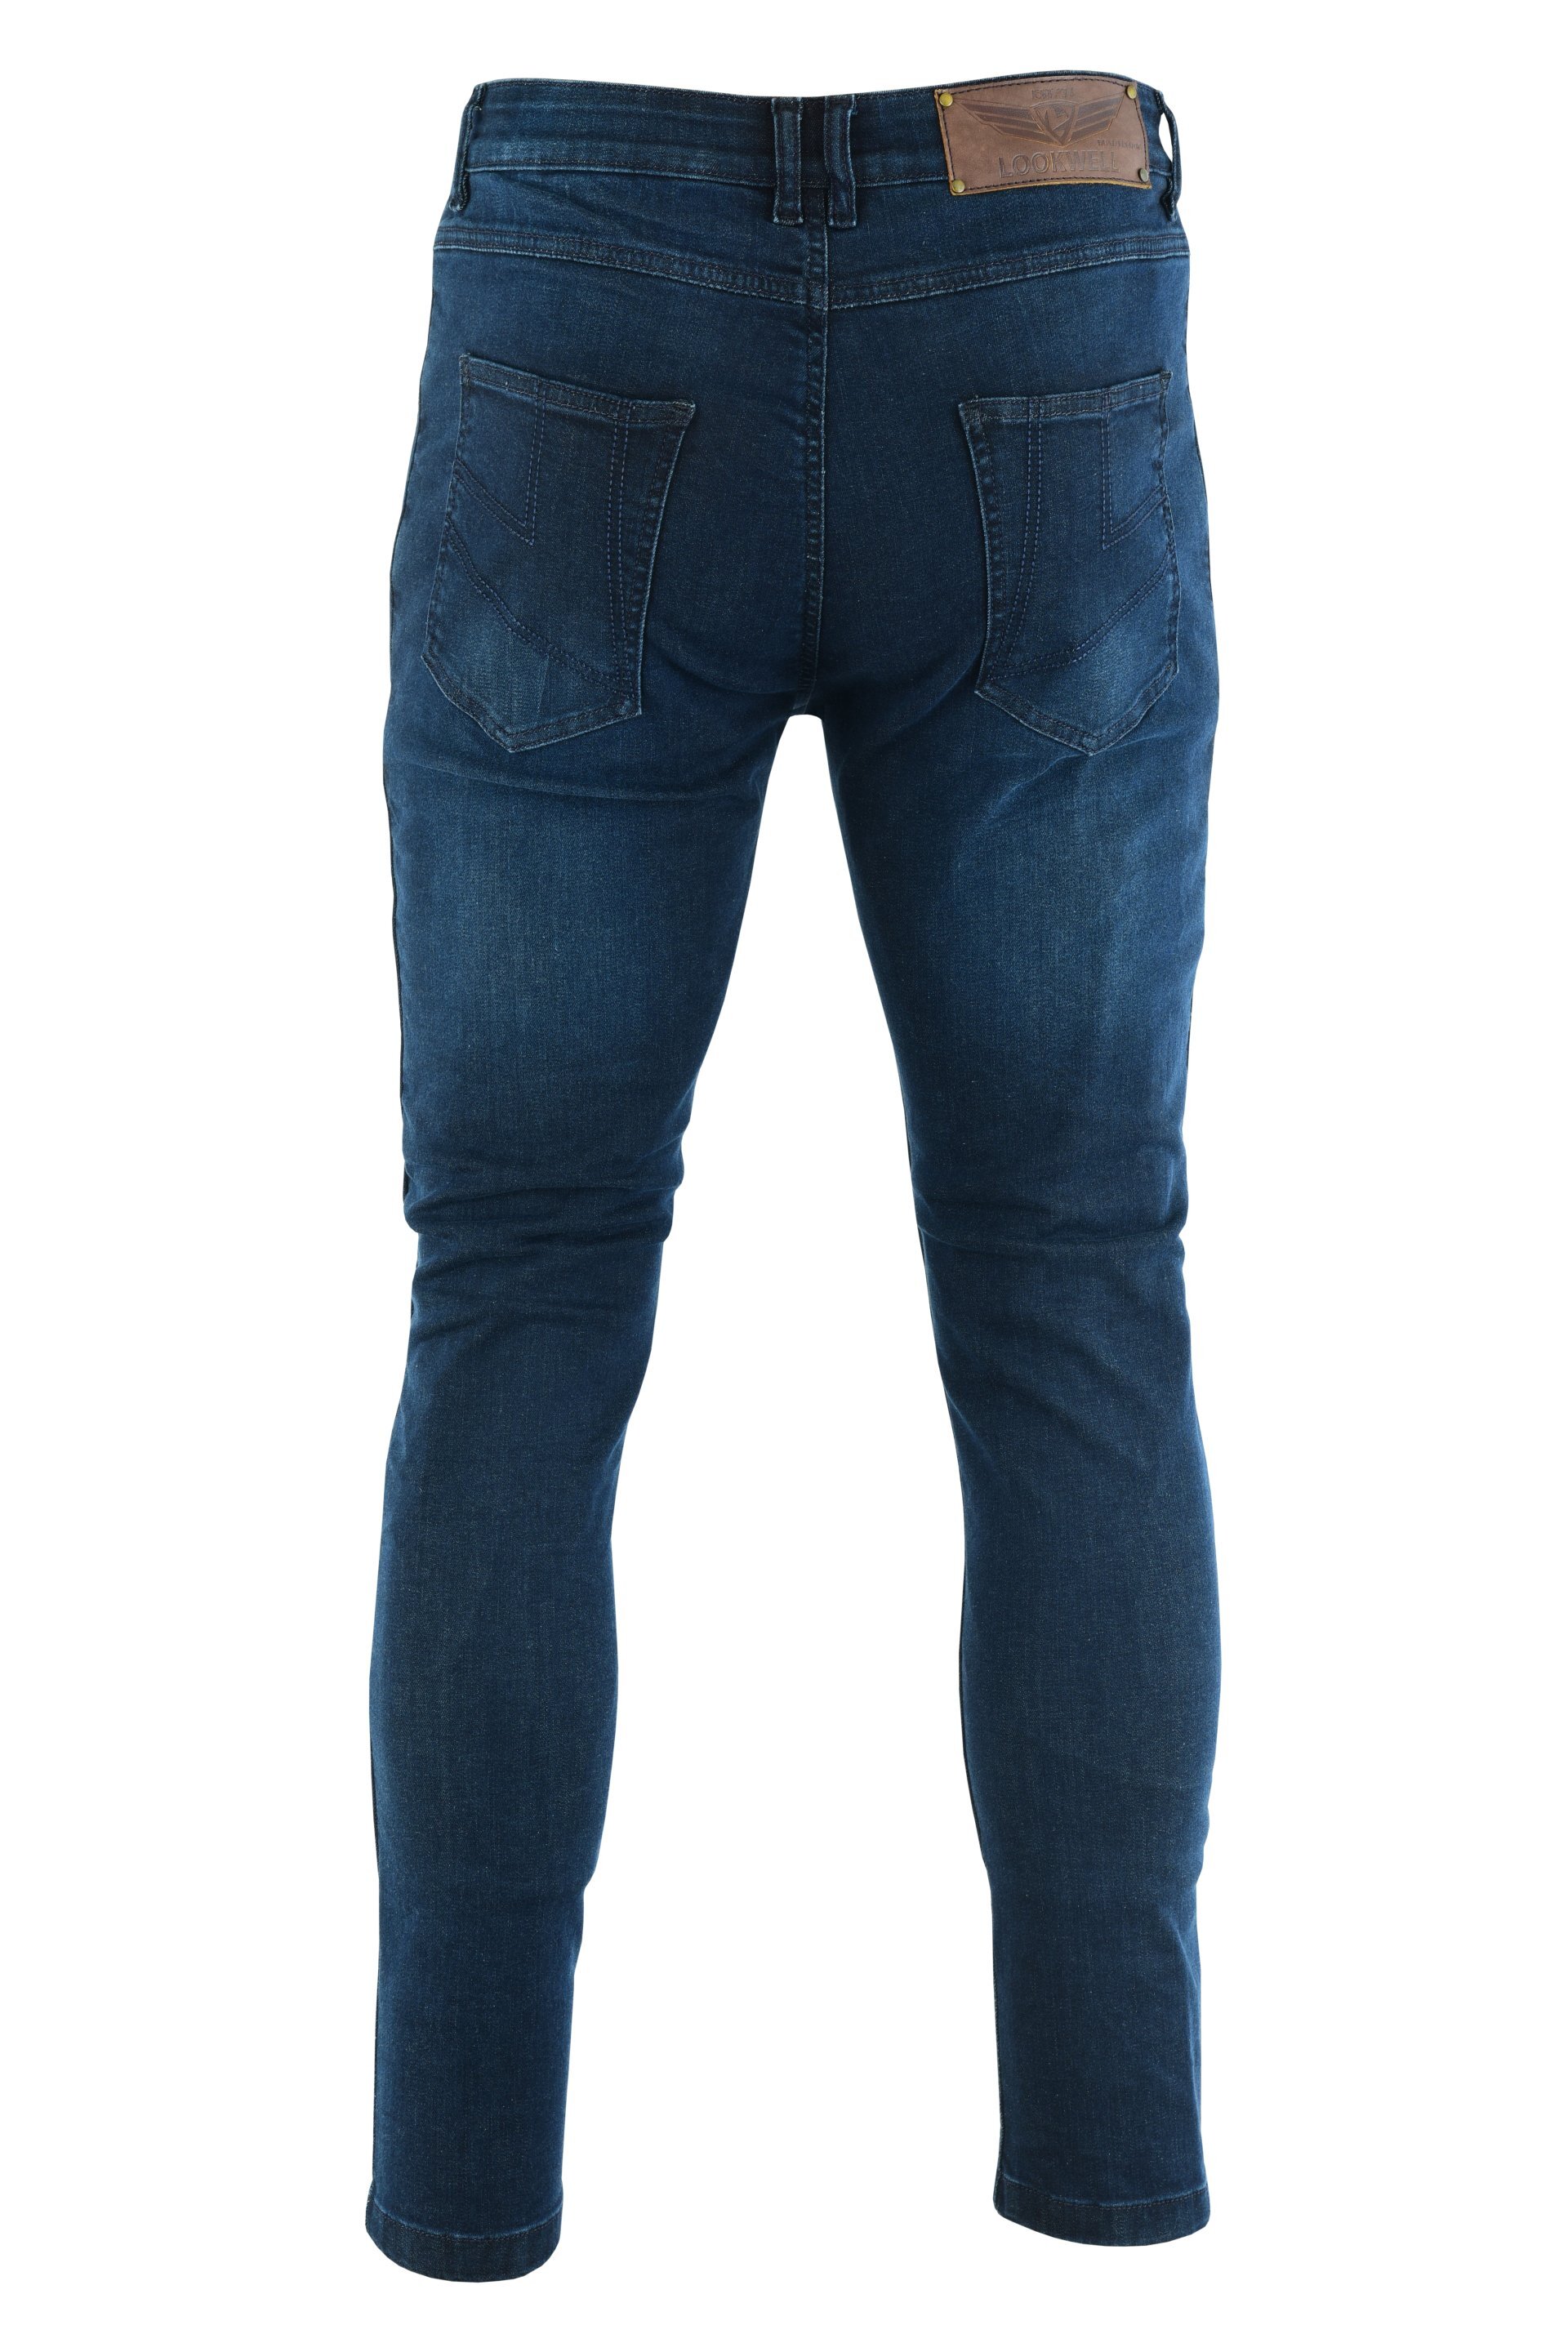 Lookwell Jaxx Jeans - Dark Blue